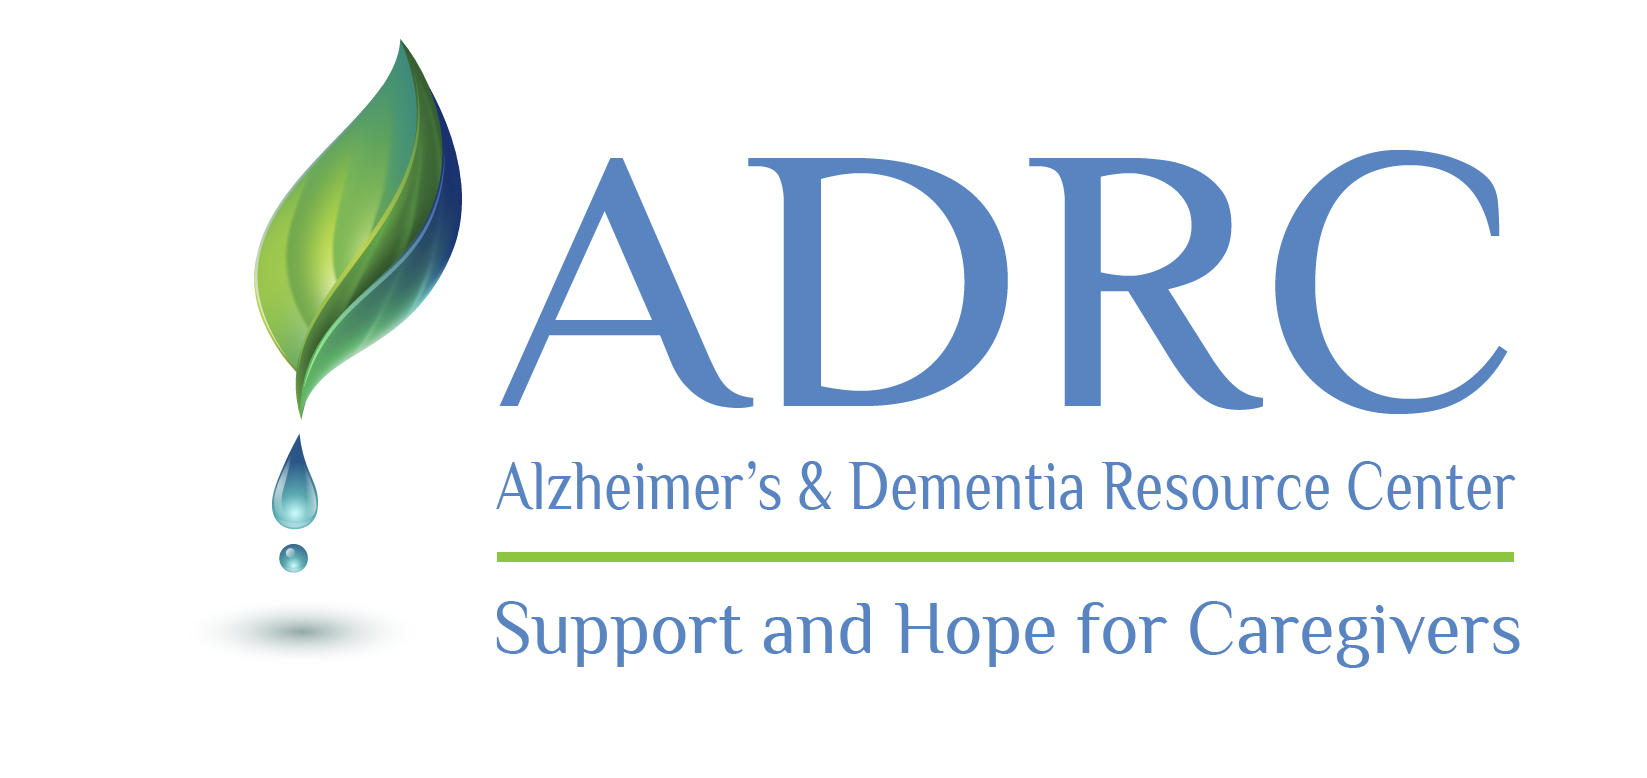 Alzheimer’s & Dementia Resource Center